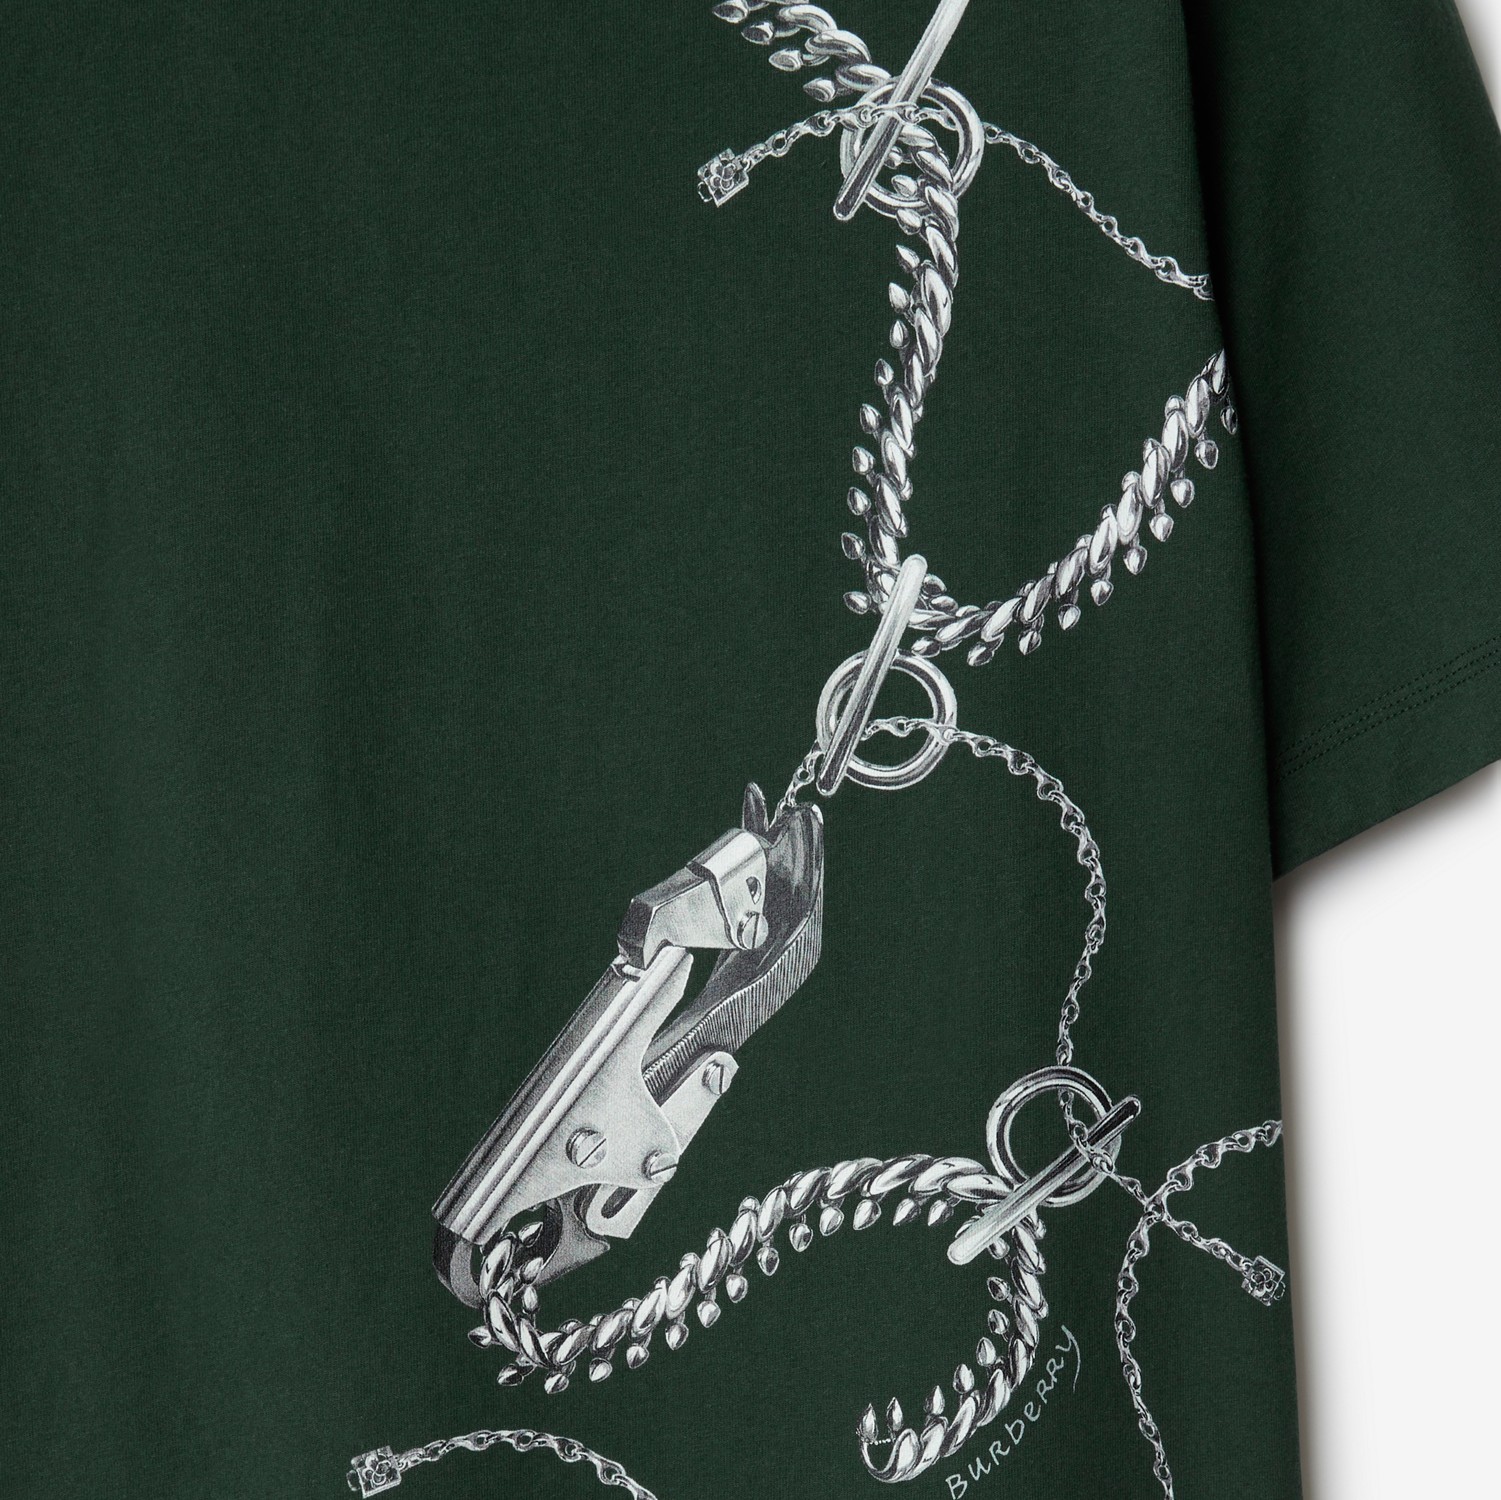 Camiseta en algodón con detalles del bolso Knight